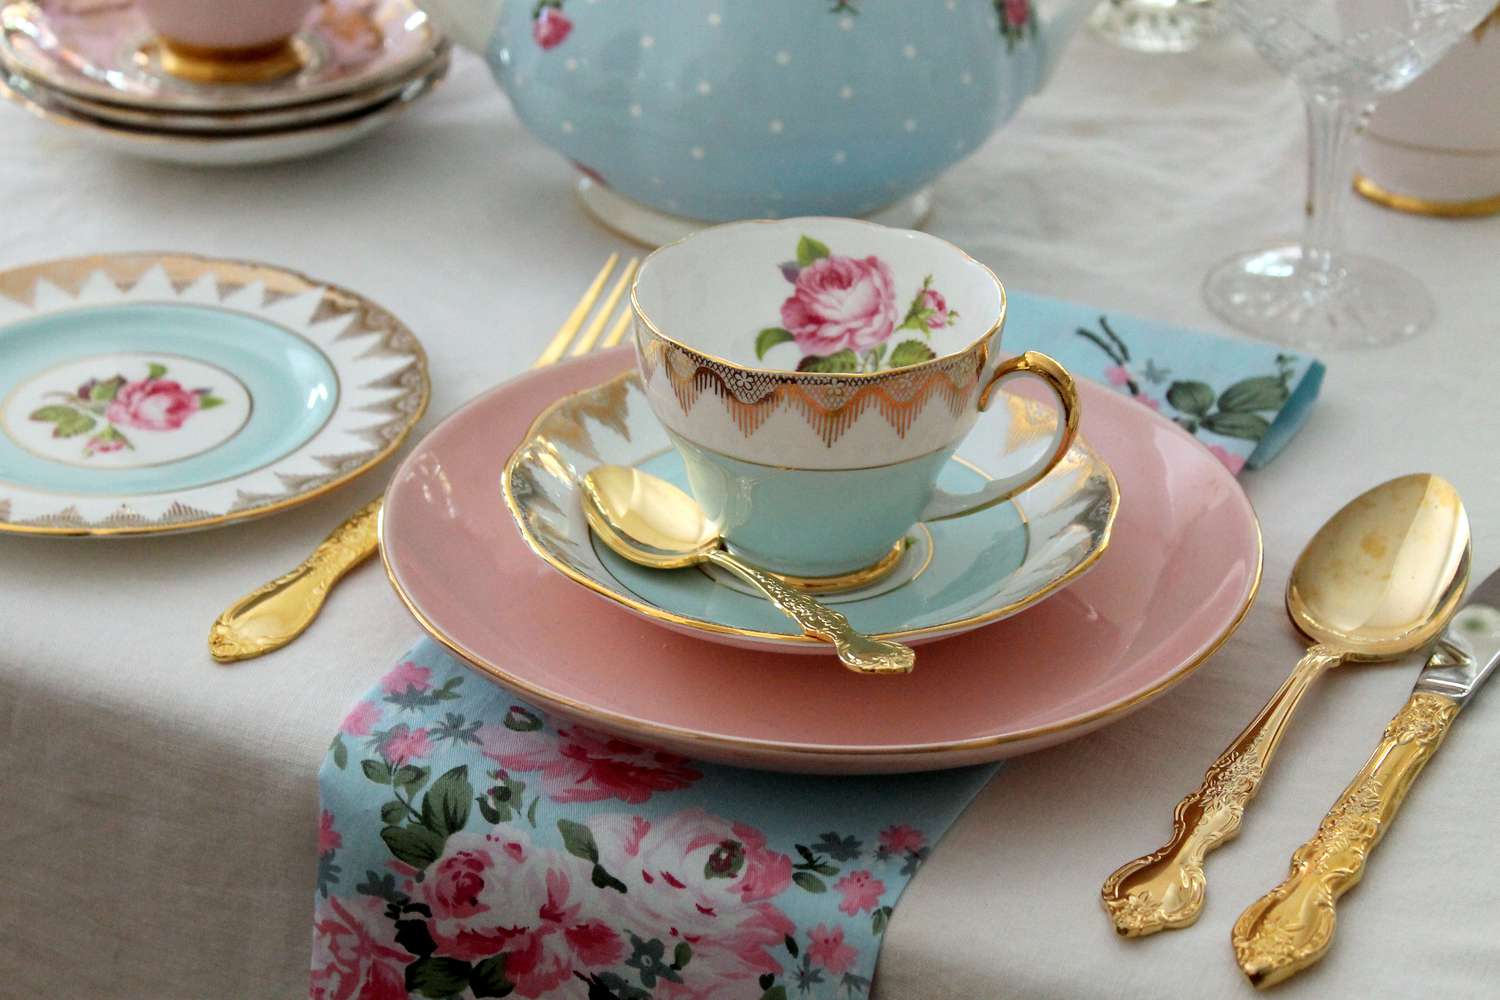 Vintage High Tea Party rosa und blaue Teetasse, Teller, goldenes Besteck, rosa Rosen, Tischset - Hochzeit Brautparty